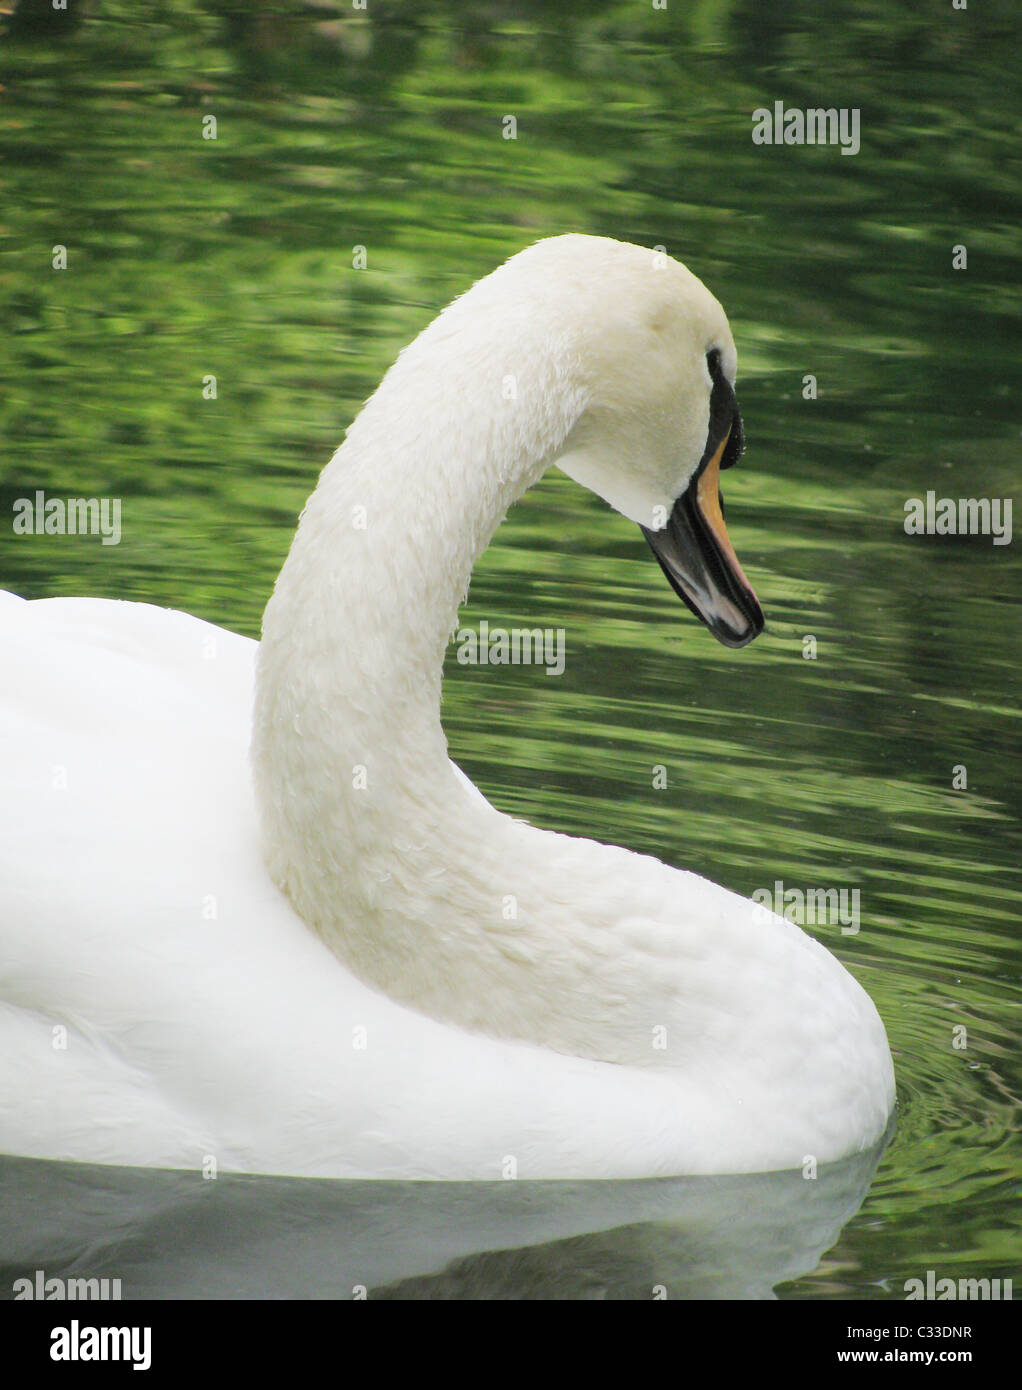 neck of gentle swan Stock Photo